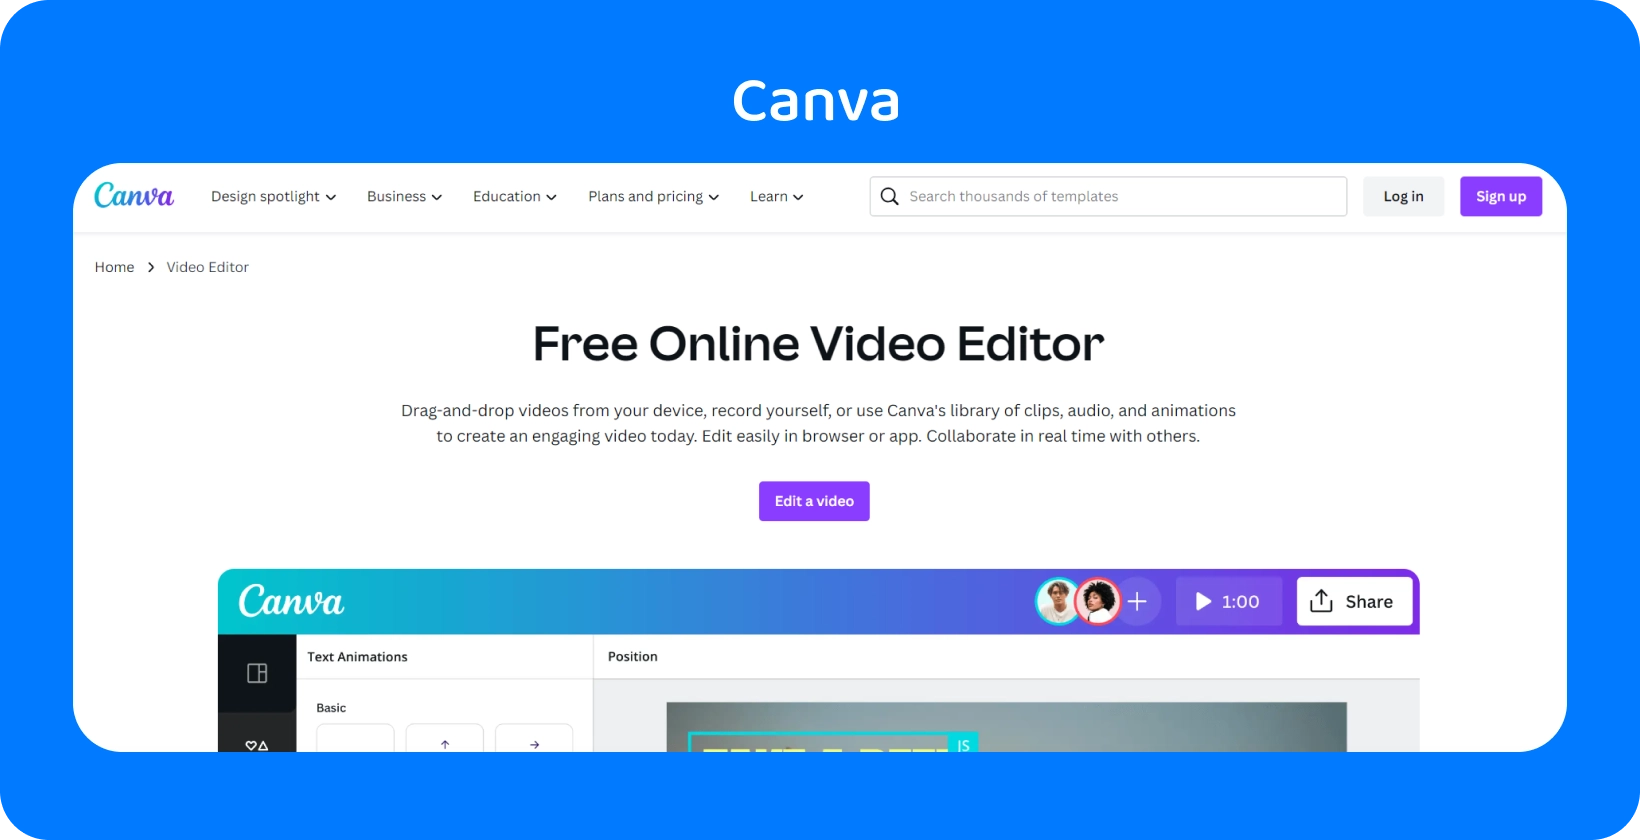 L’interface conviviale de Canva s’affiche avec diverses options de conception pour les médias sociaux, les présentations, les vidéos, etc.